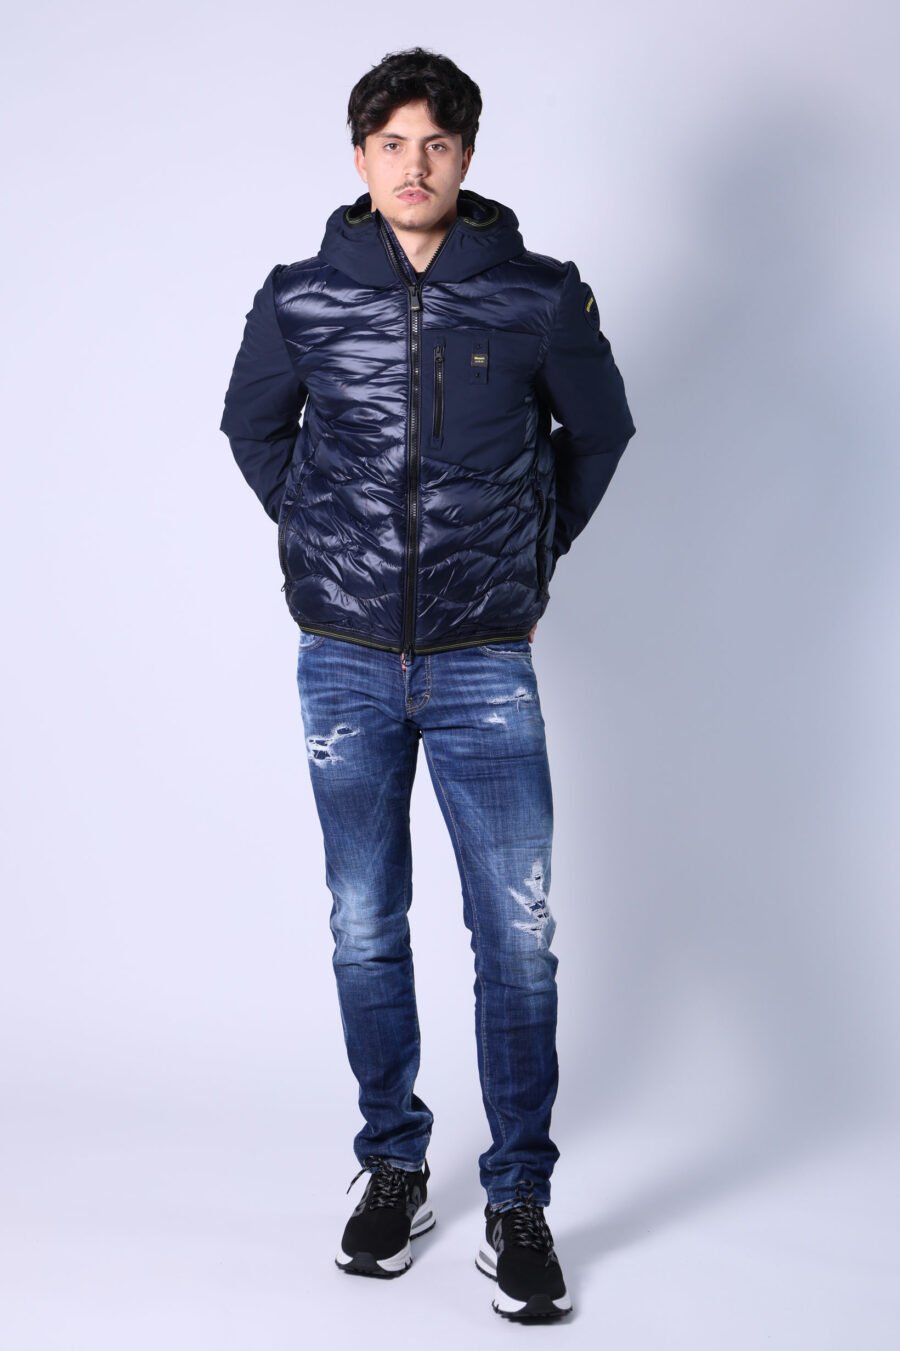 Calças de ganga slim "Slim jean" azul semi-desgastadas com rasgões - Untitled Catalog 05529